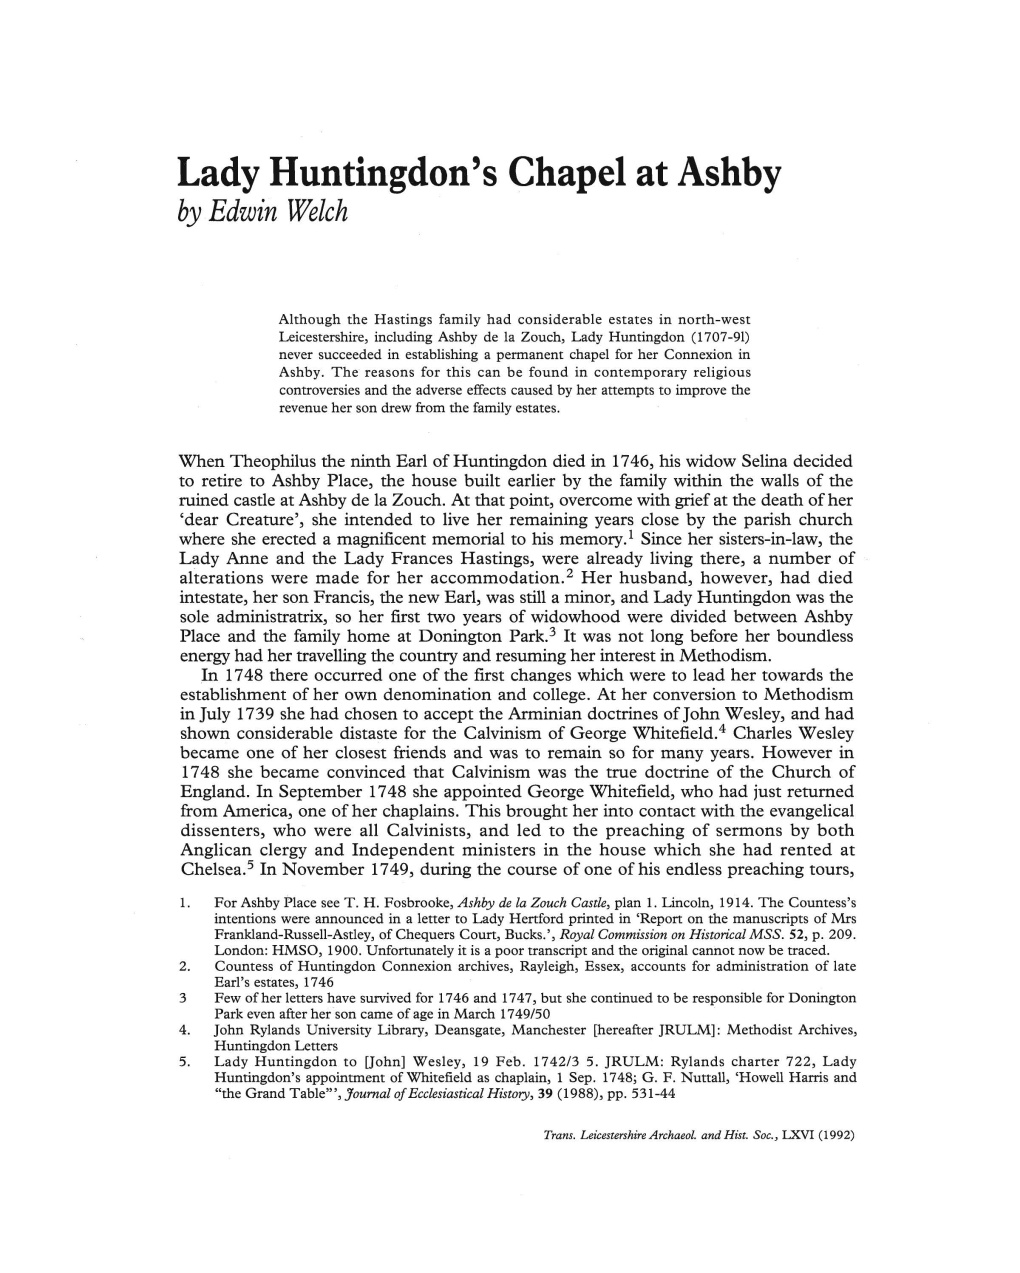 Lady Huntingdon's Chapel at Ashby Pp.136-142